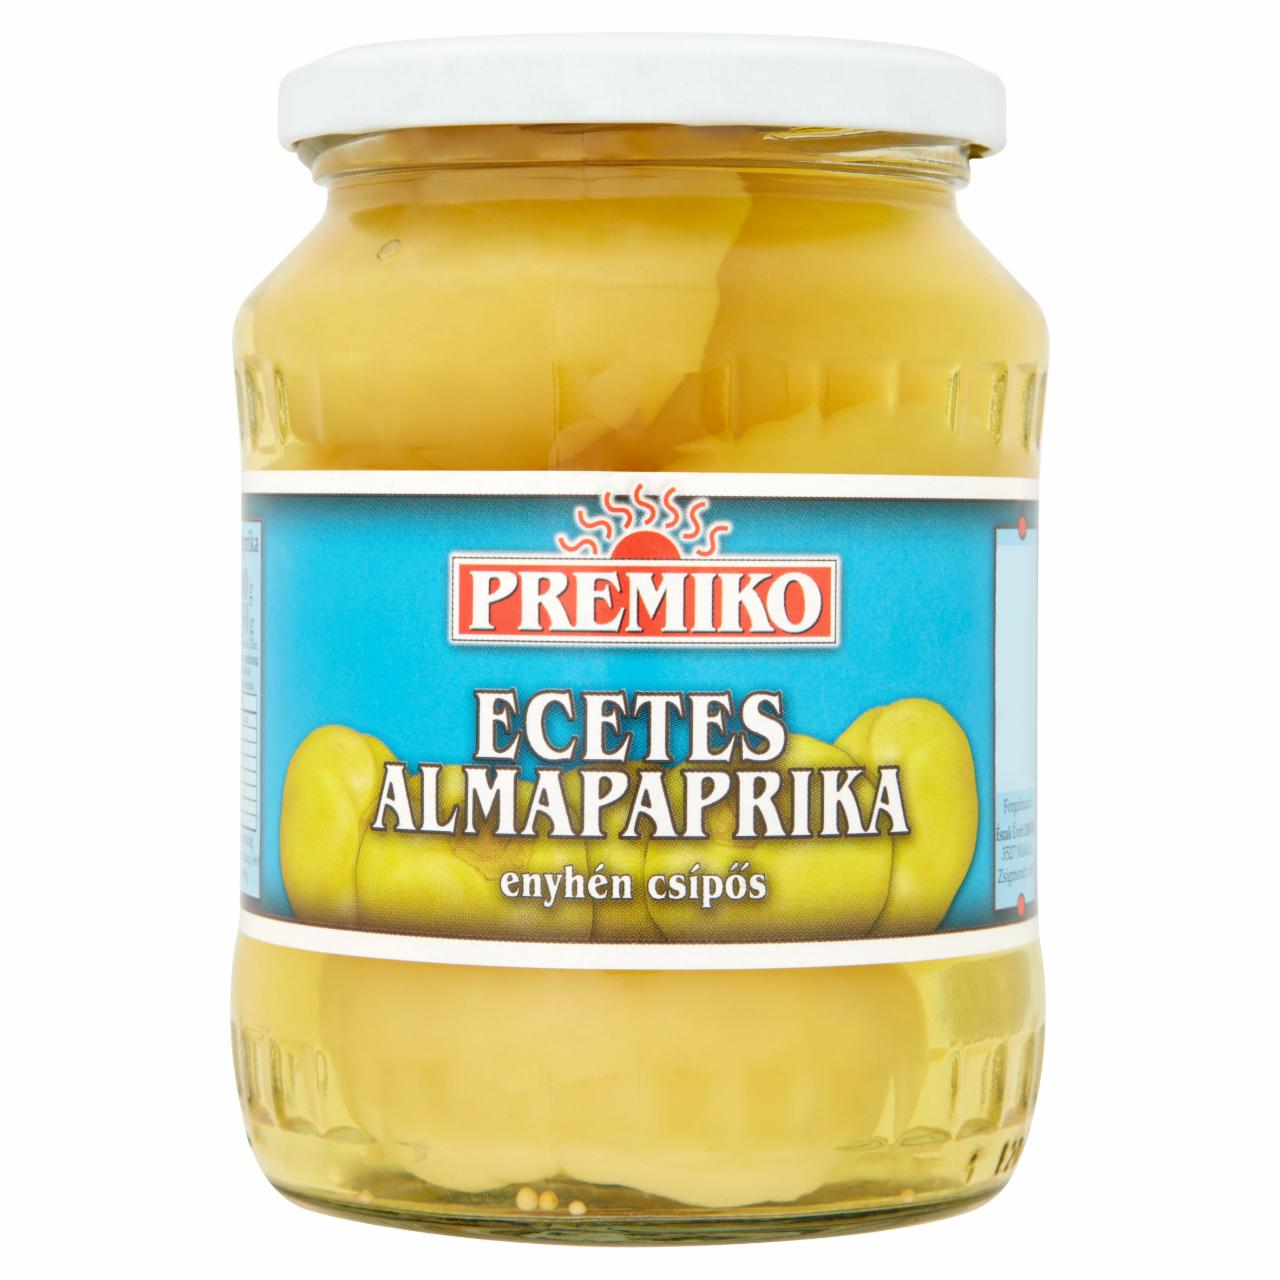 Képek - Premiko enyhén csípős ecetes almapaprika 680 g